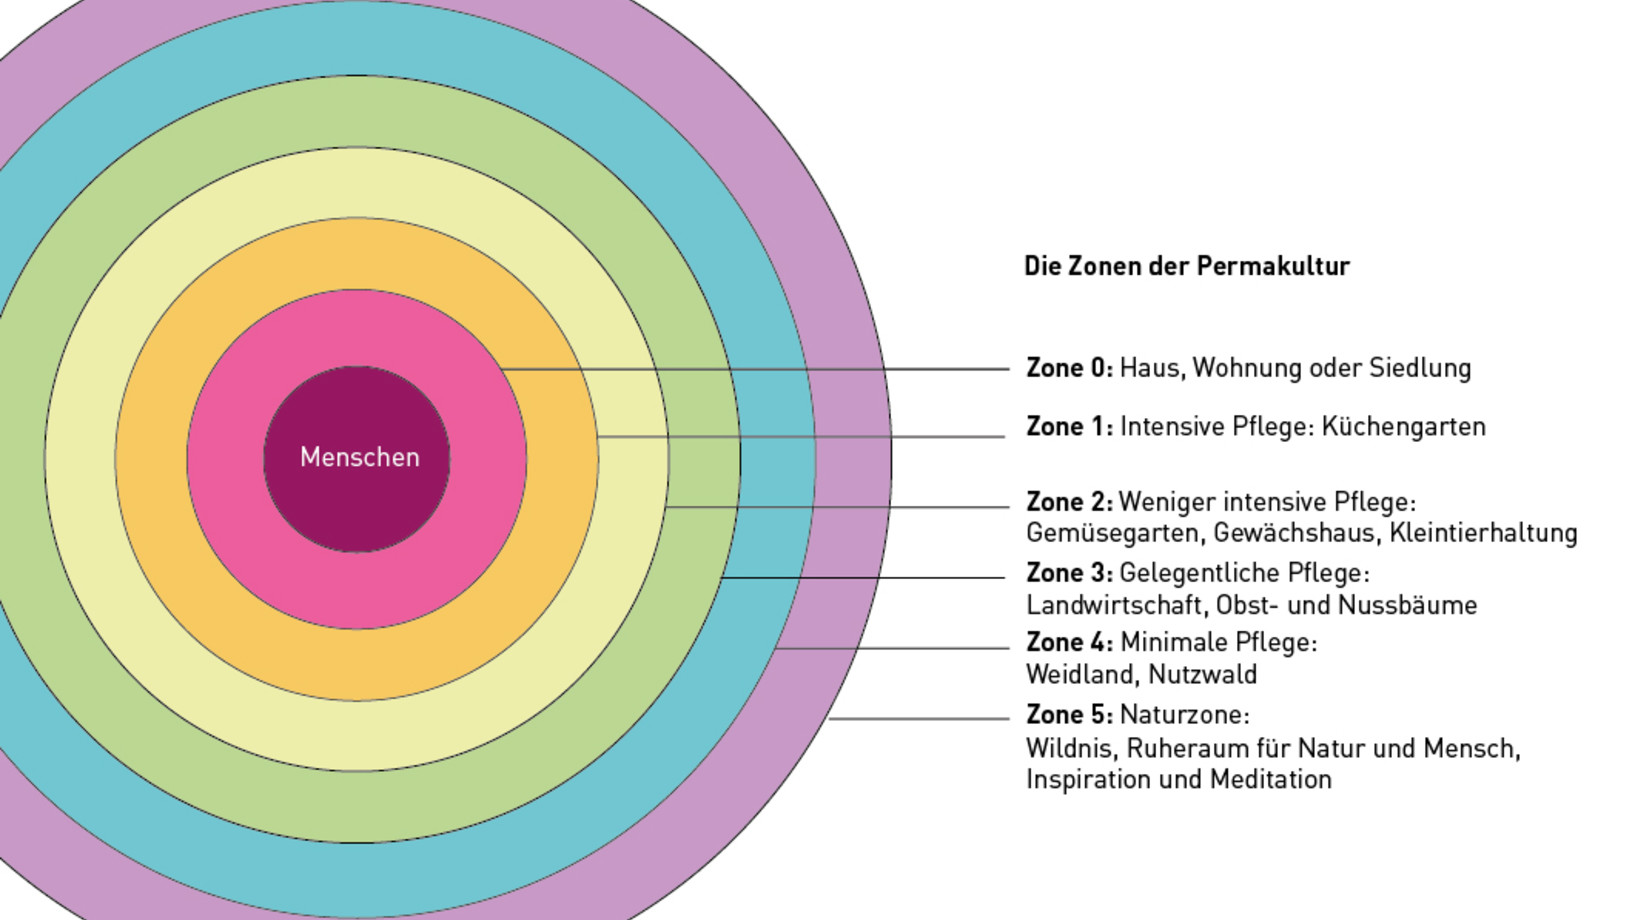 Die Zonen der Permakultur